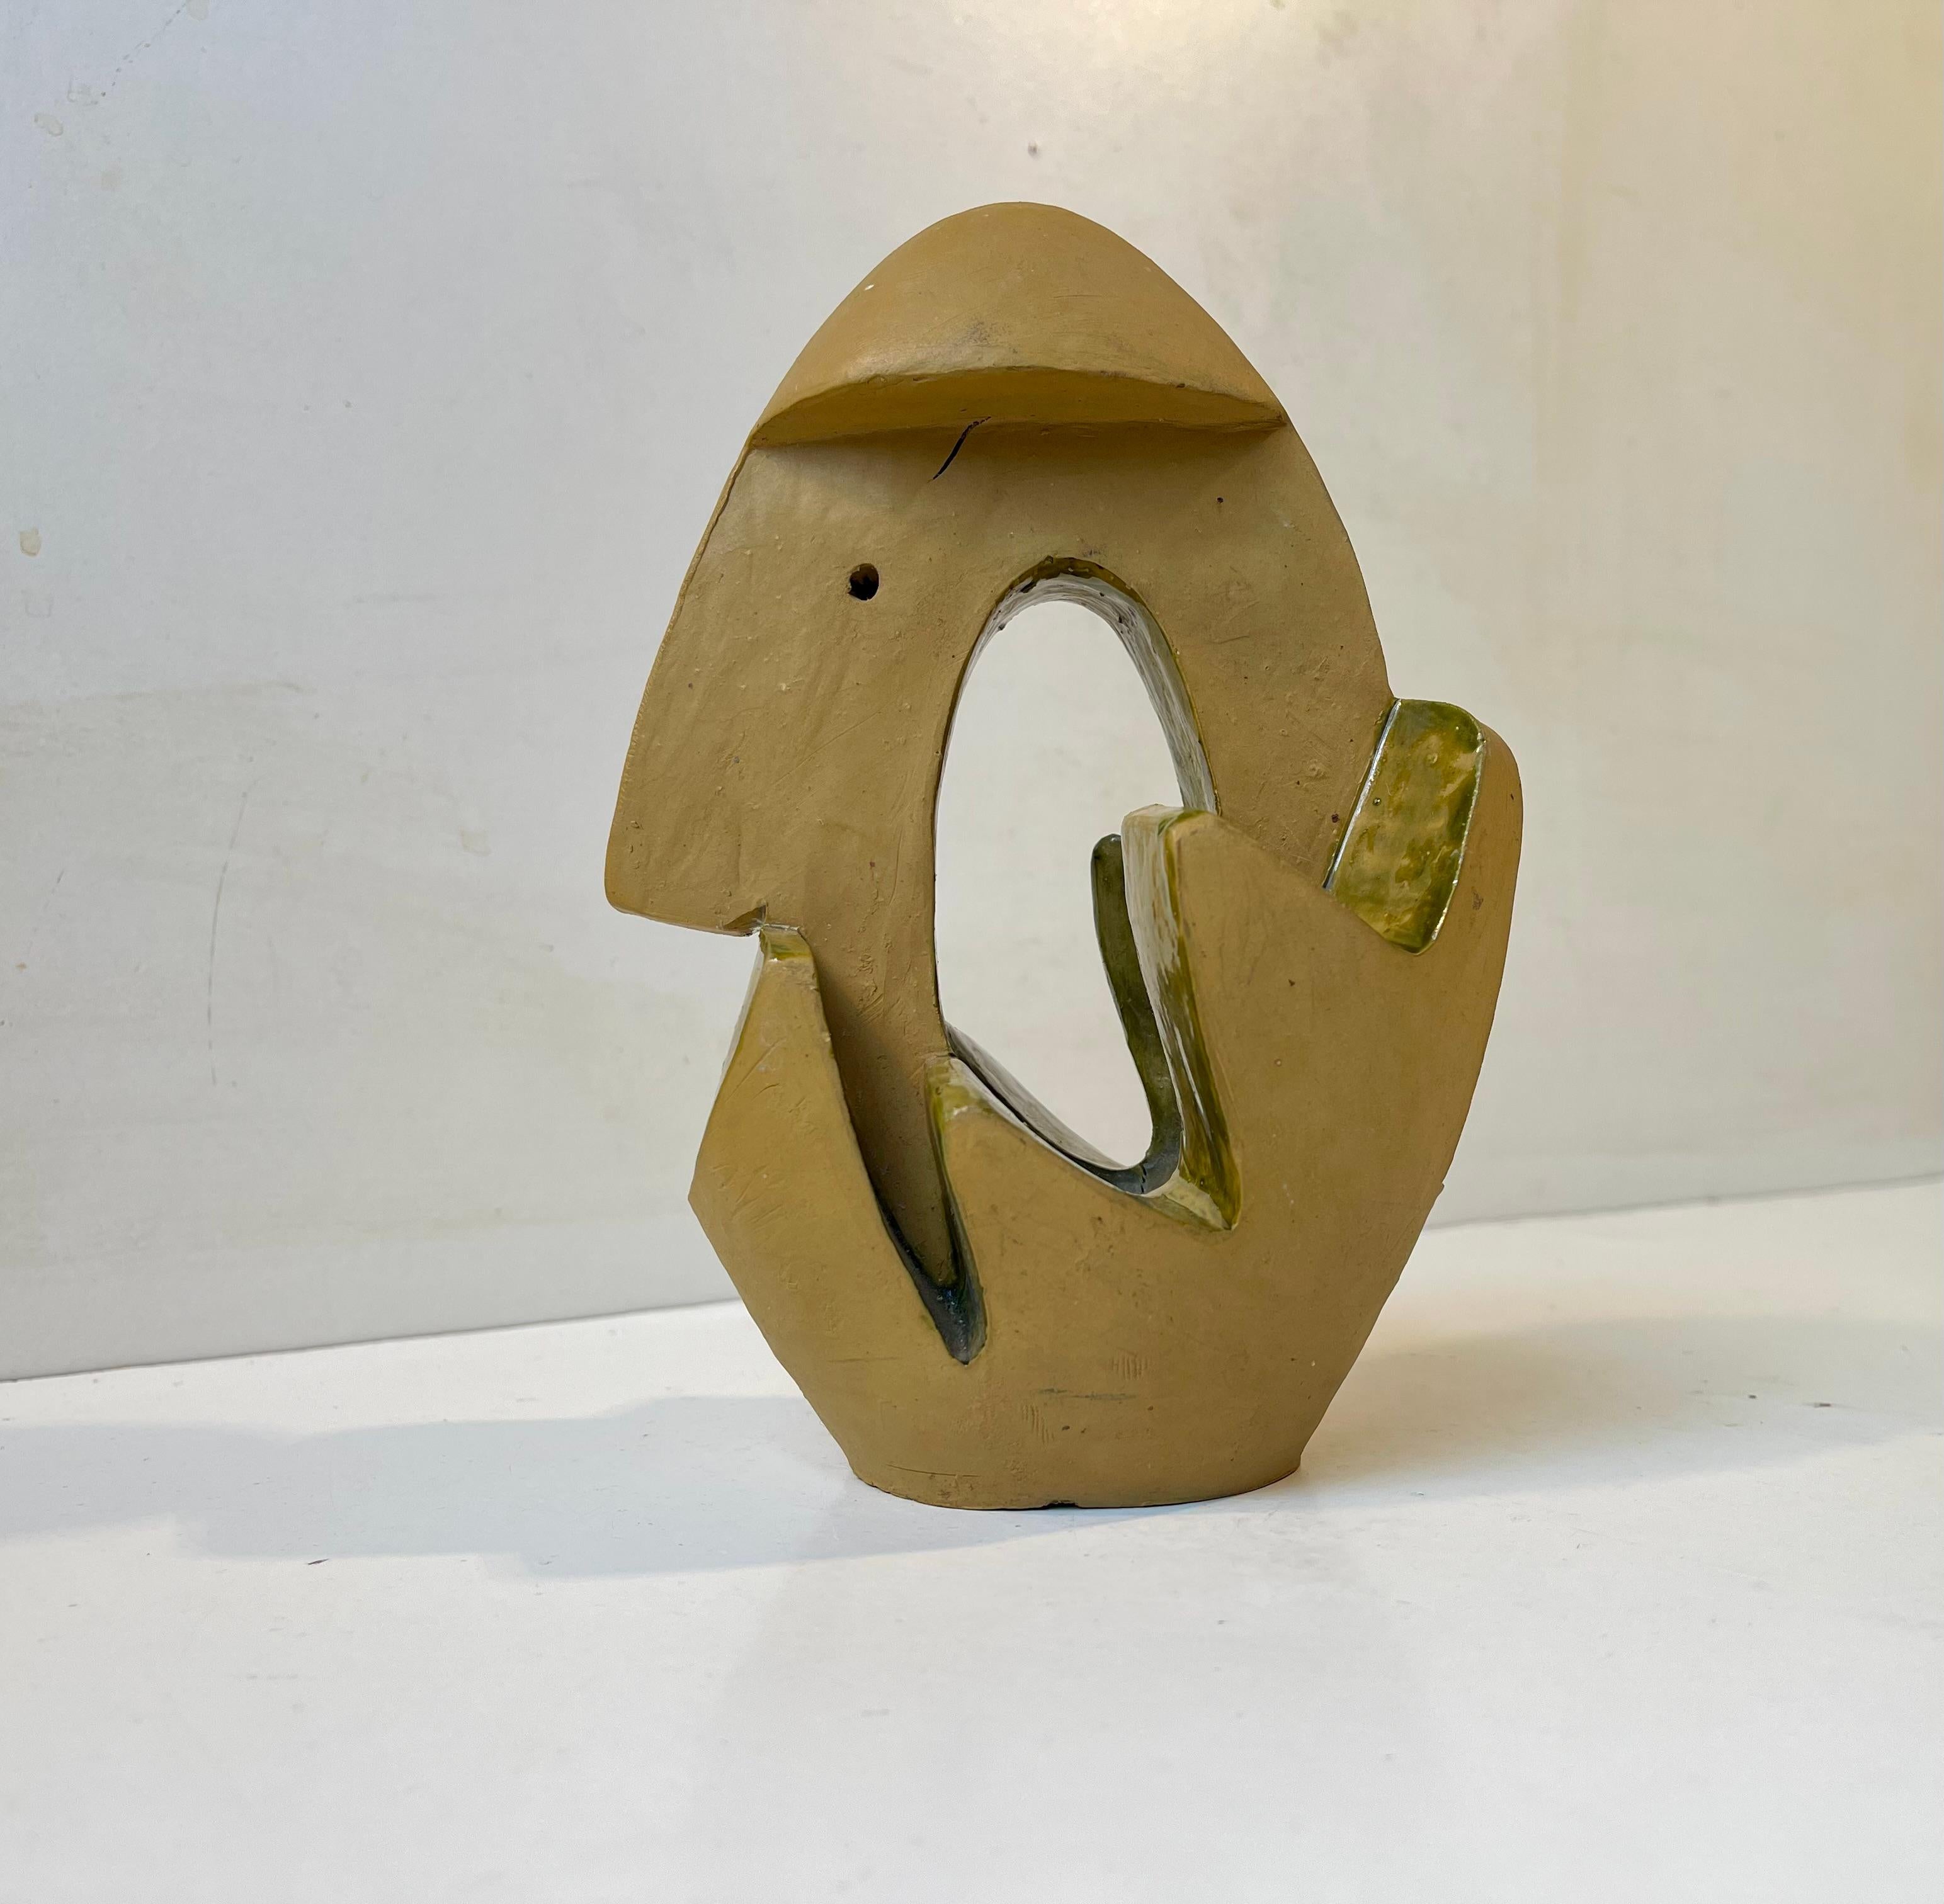 Figurine/ornement surréaliste sculptural des années 1960 en céramique partiellement émaillée et peinte à la main. Une forme abstraite basée sur une forme principale ovoïde. La couleur principale est la moutarde et la glaçure appliquée est de